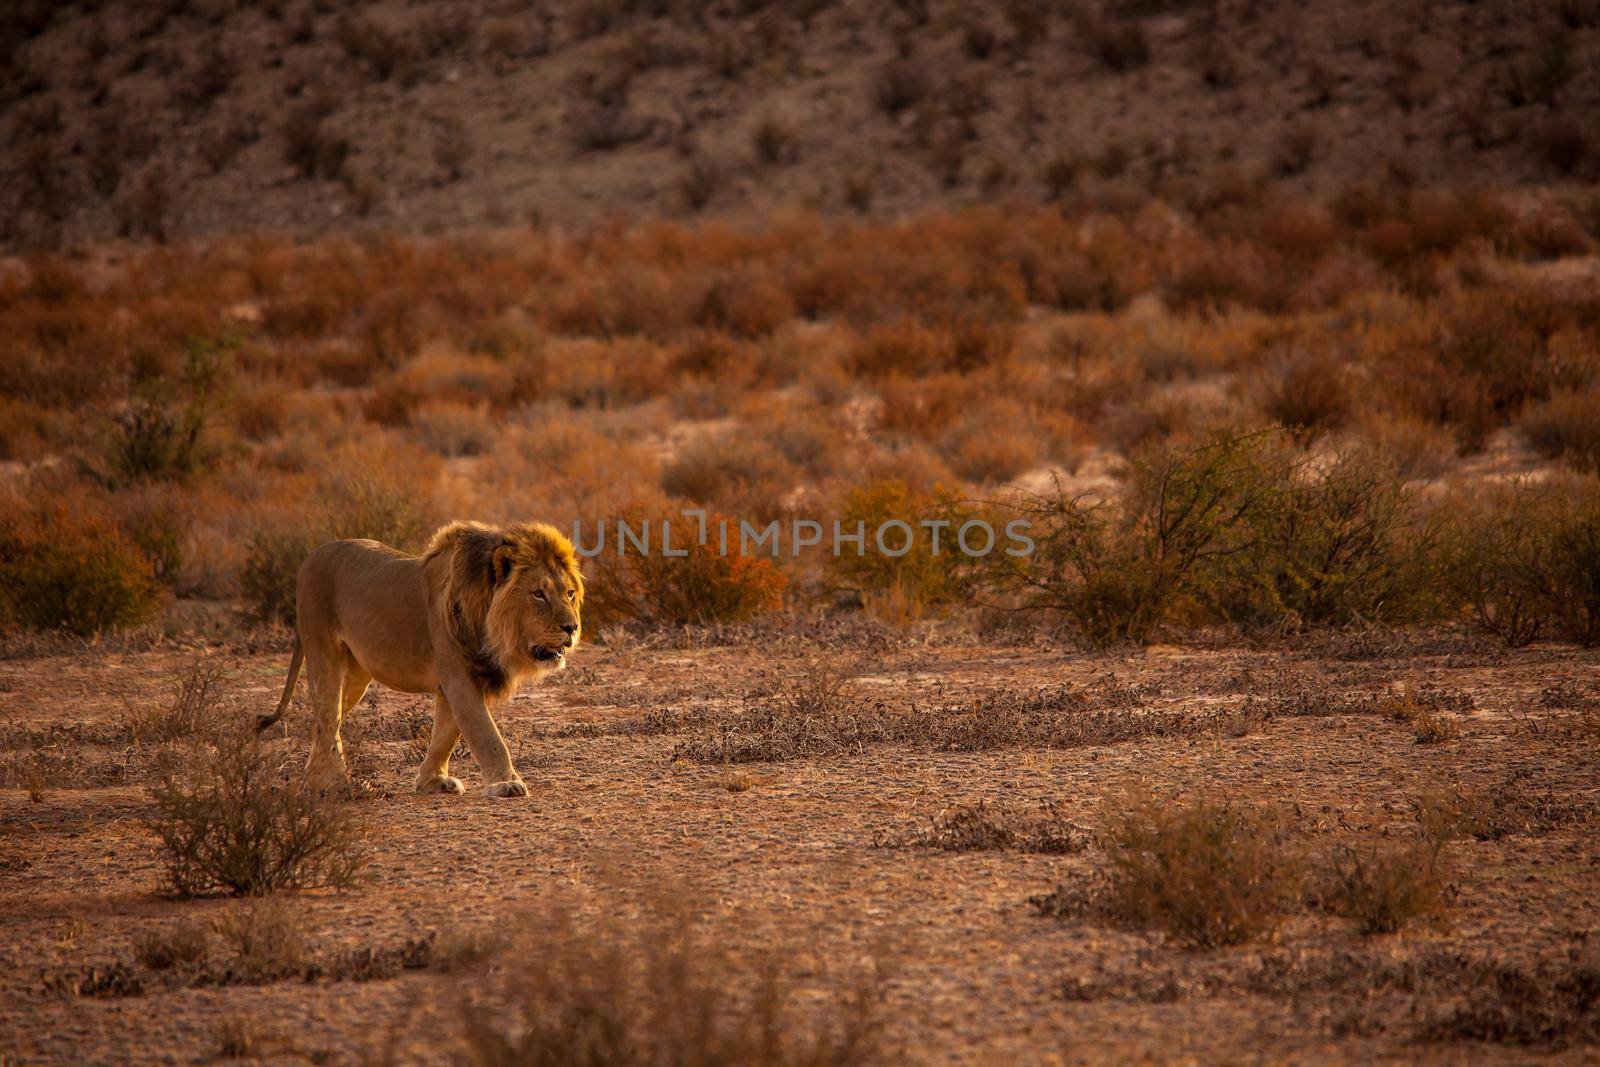 Kalahari Lion (Panthera leo) 5123 by kobus_peche